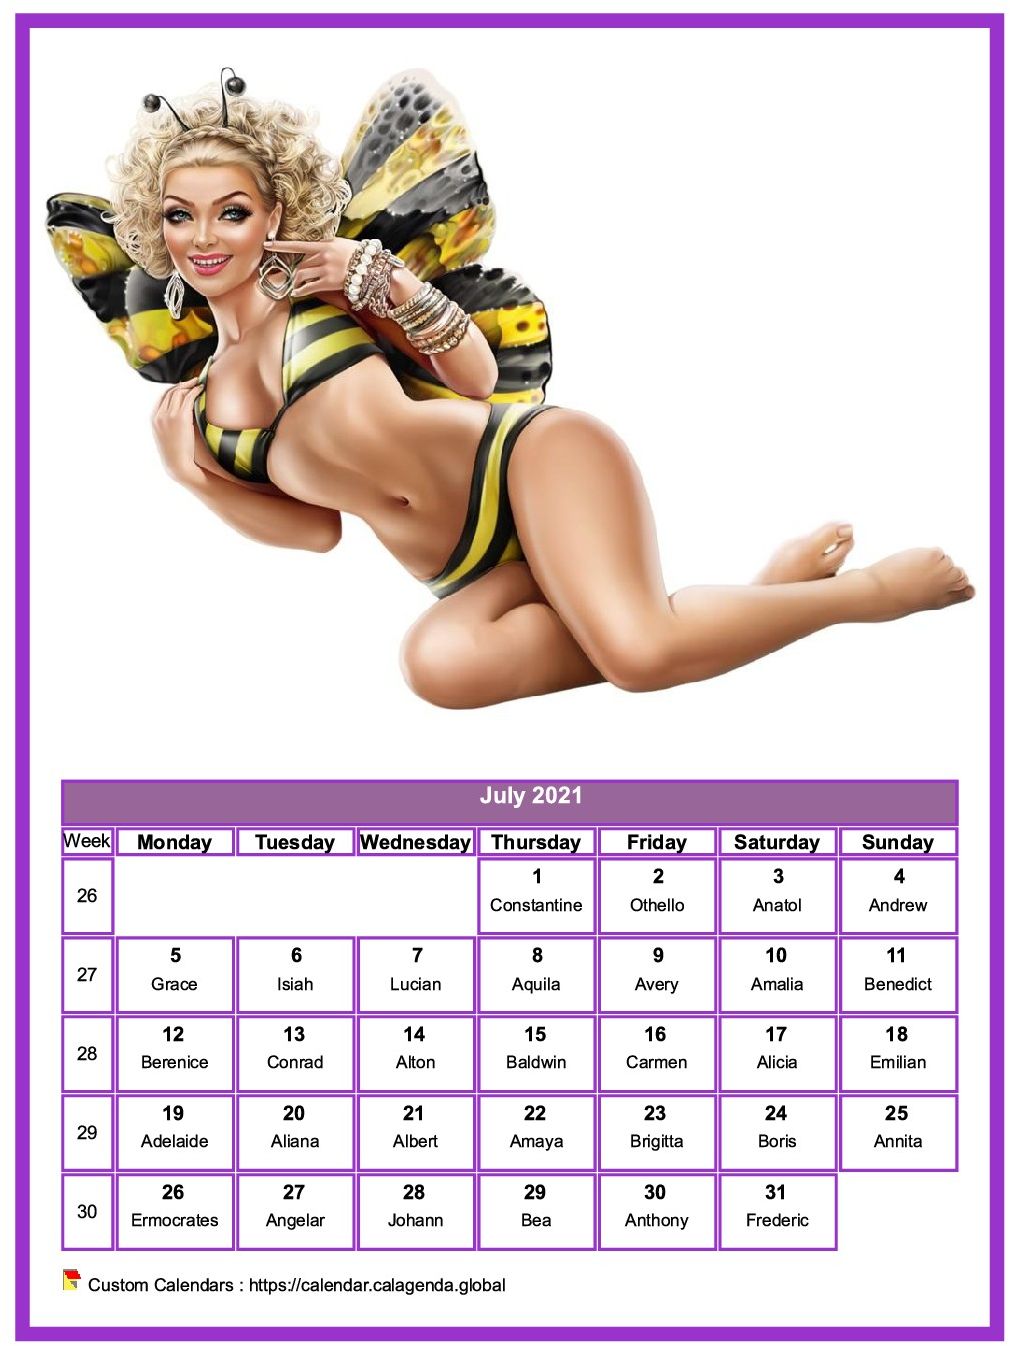 Calendar July 2021 women